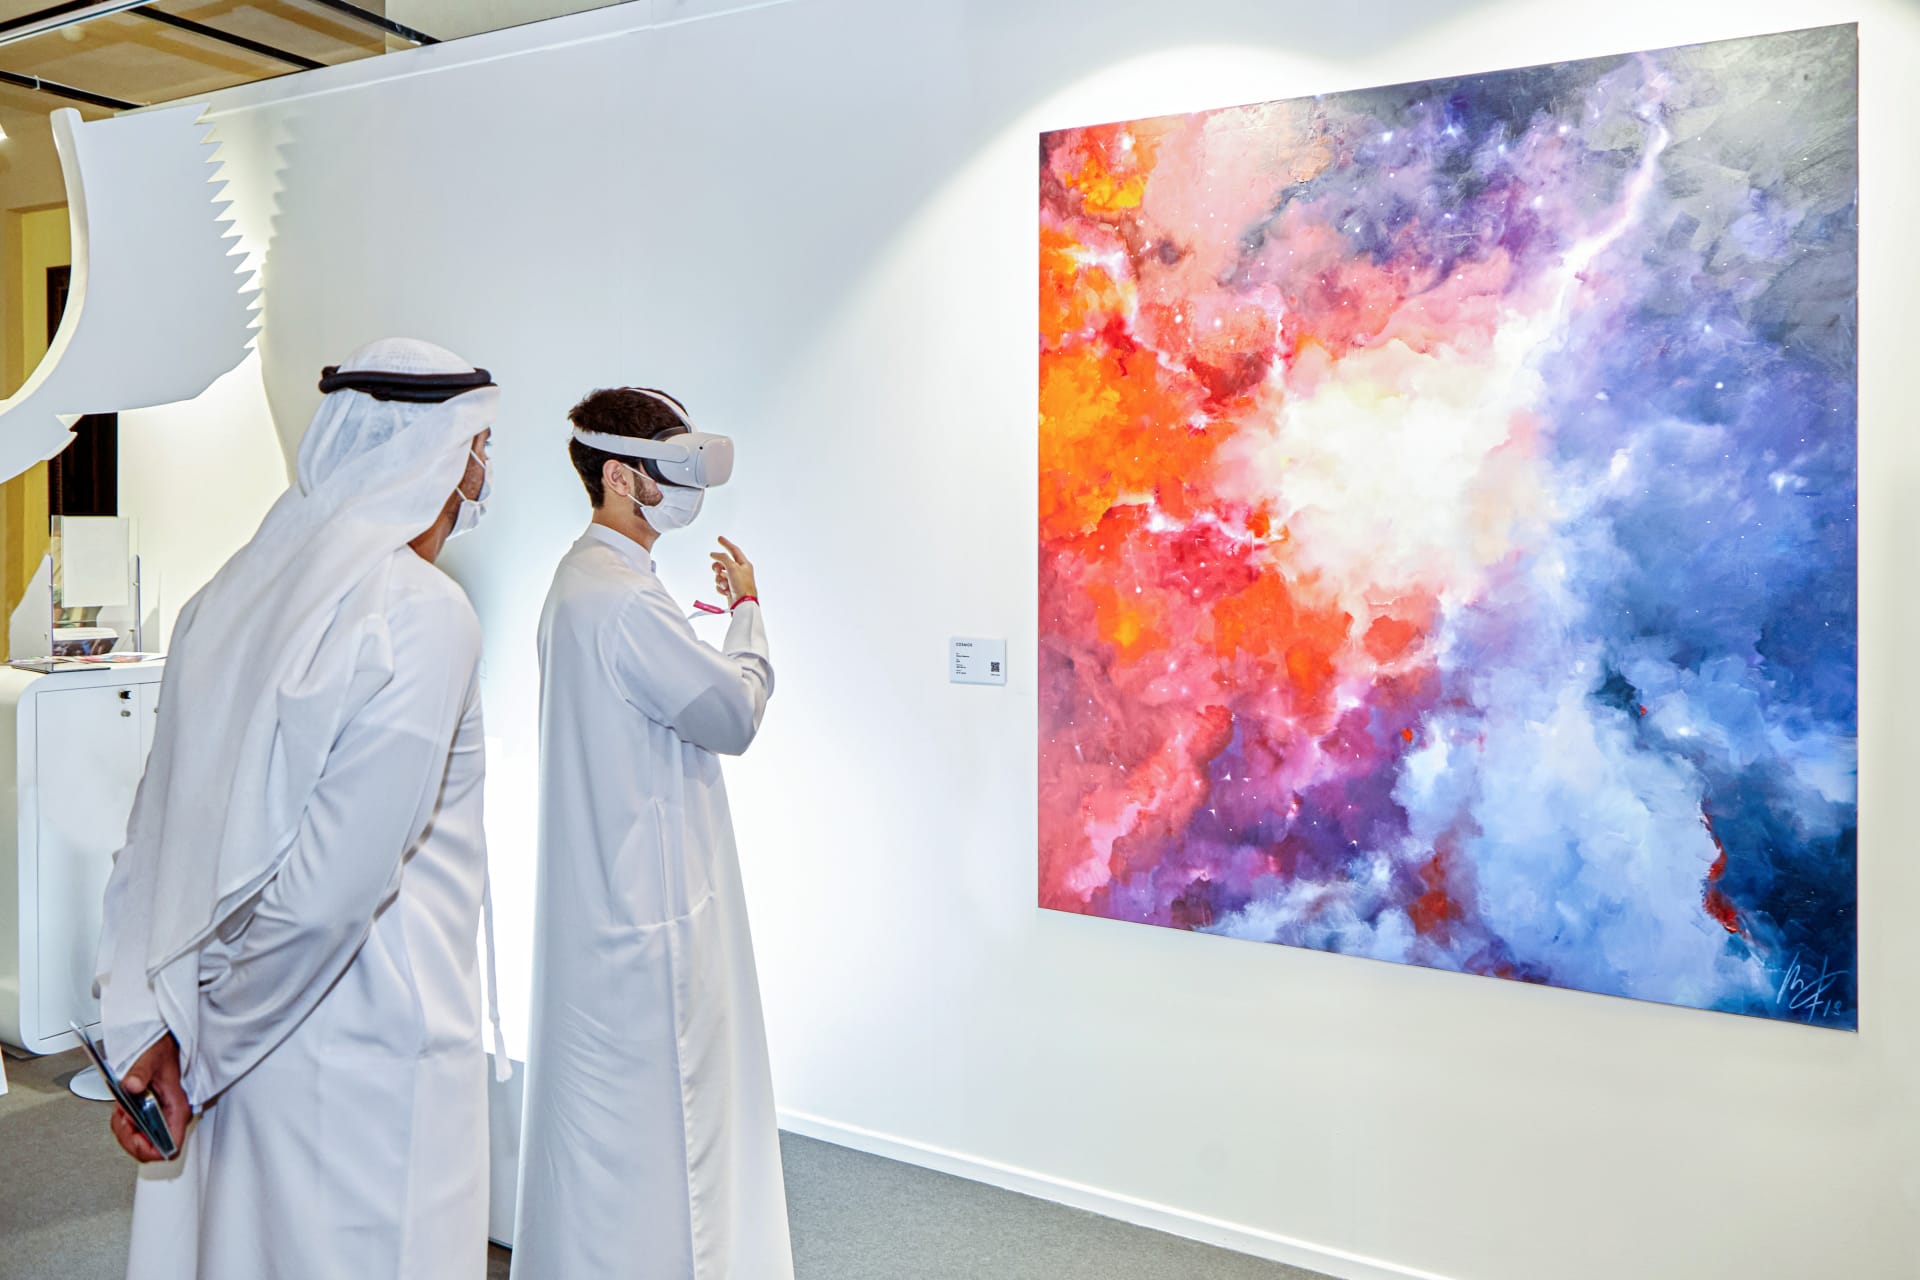 كيف سيبدو السفر إلى الفضاء الخارجي؟ فنانة تكشف عن تخيلها بمعرض في دبي